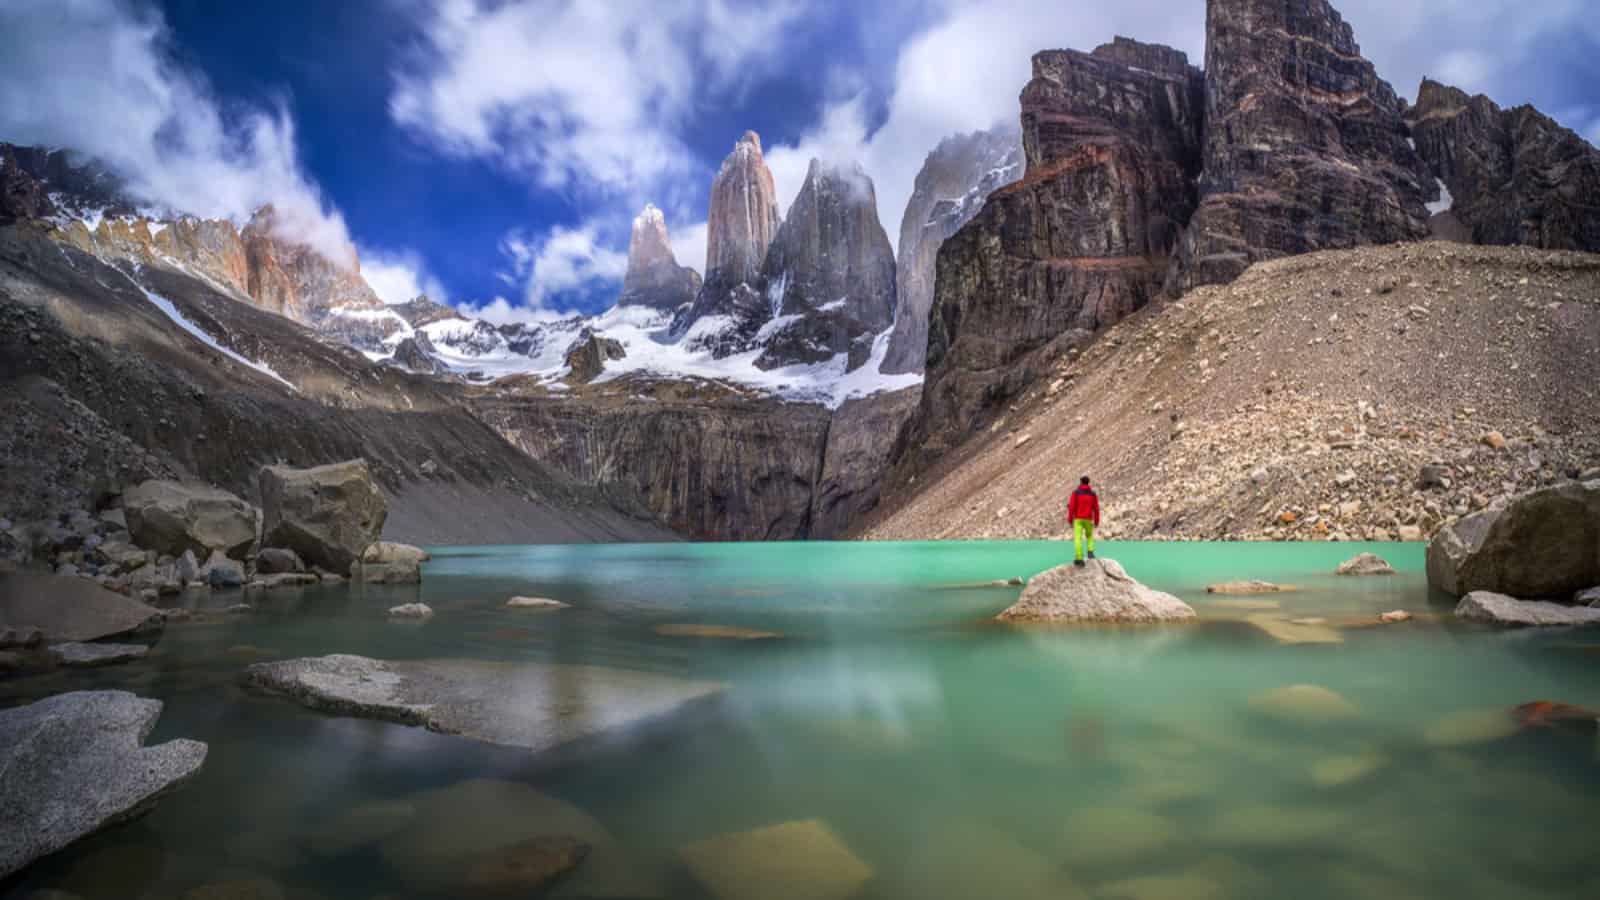 Hiker in red jacket admiring 3 peaks at Base de las Torres viewpoint in Torres del Paine, Patagonia